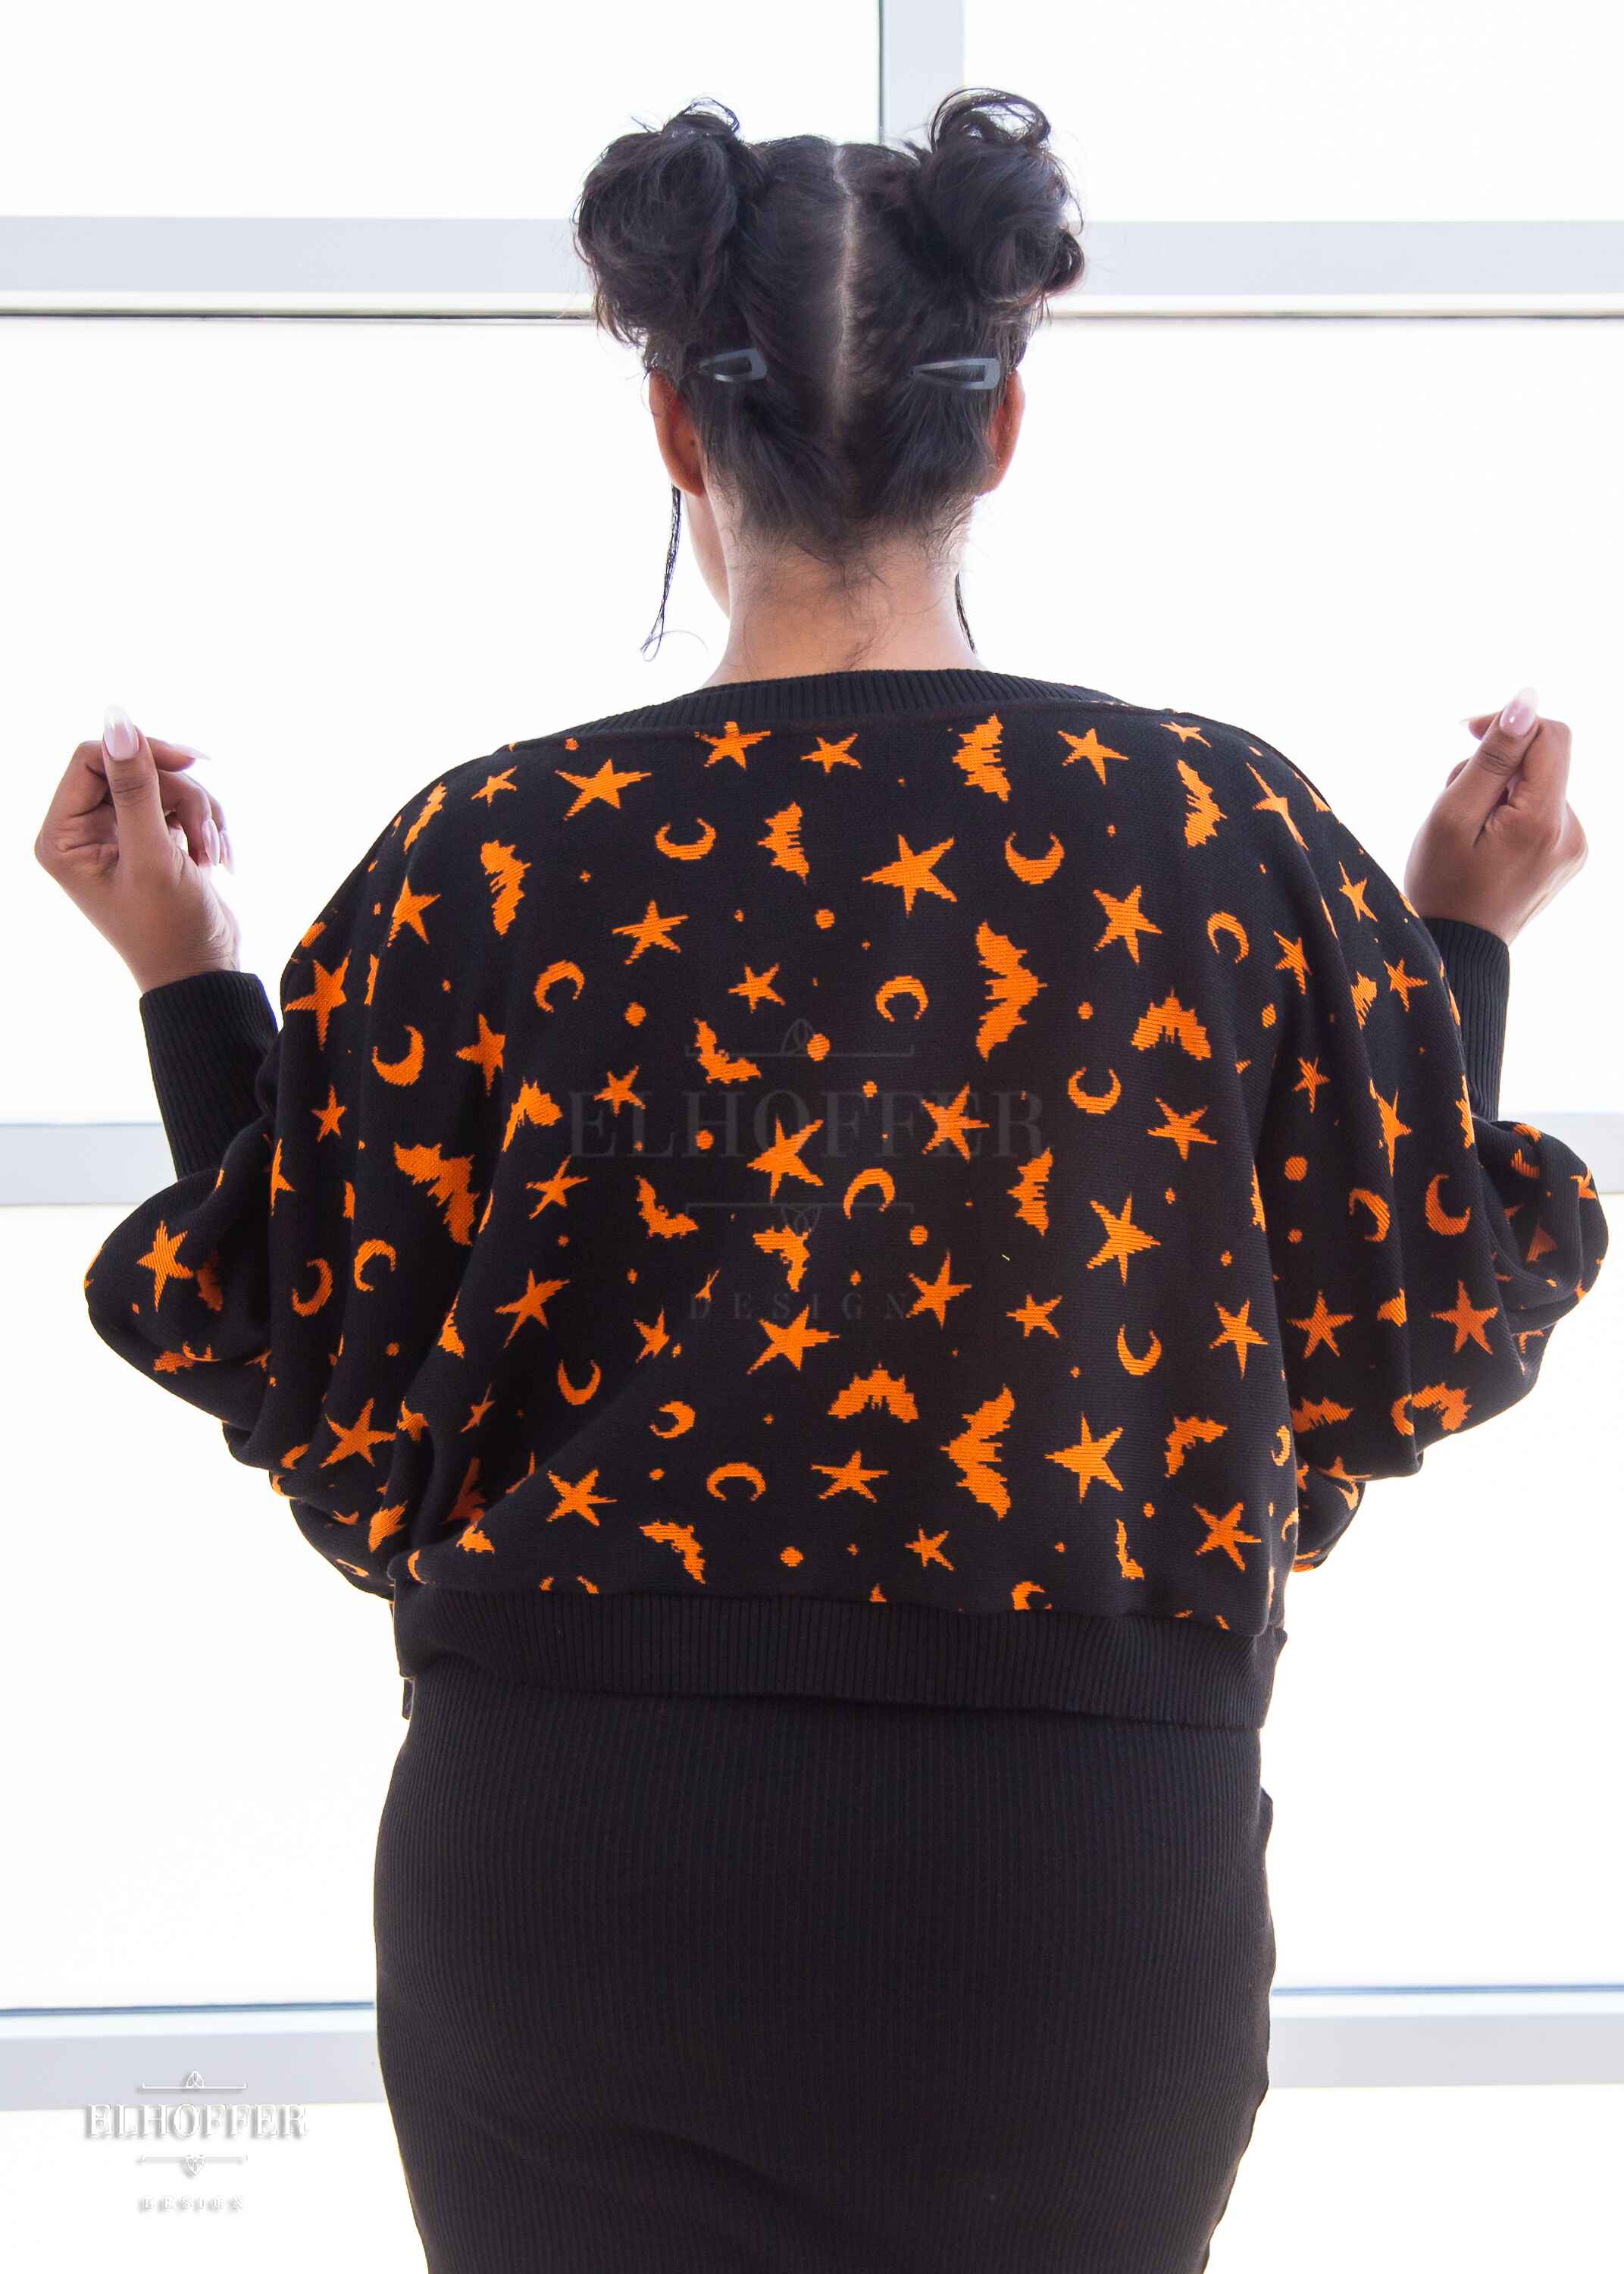 Essential Whitney Oversize Sweater - Black w/ Orange Batty Witch